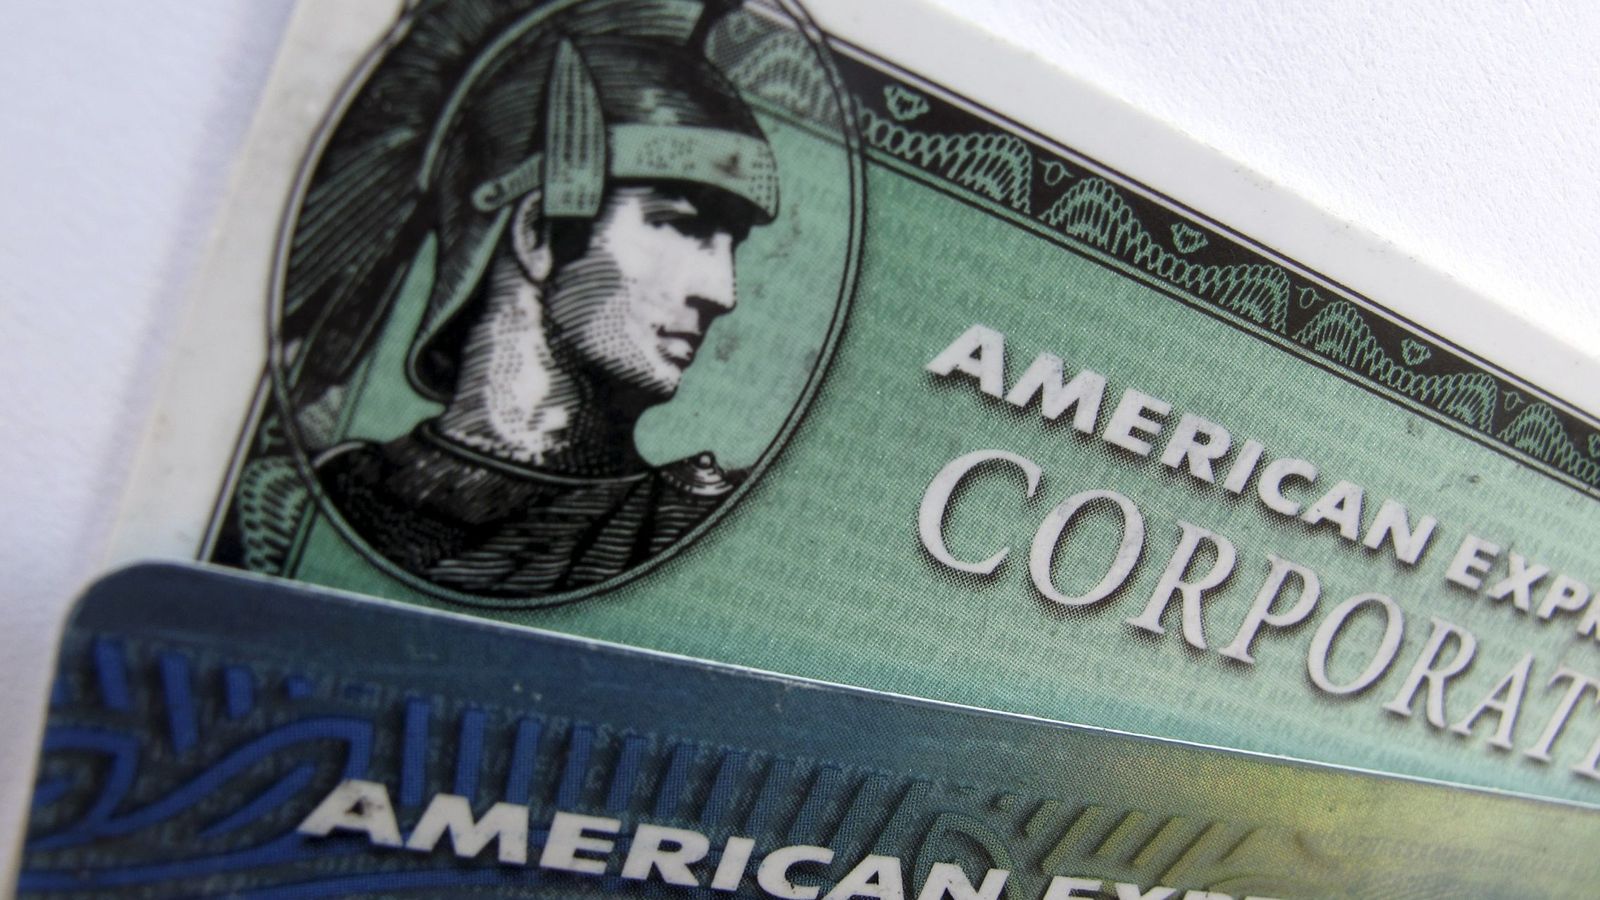 Foto: Imagen de la clásica tarjeta de American Express.